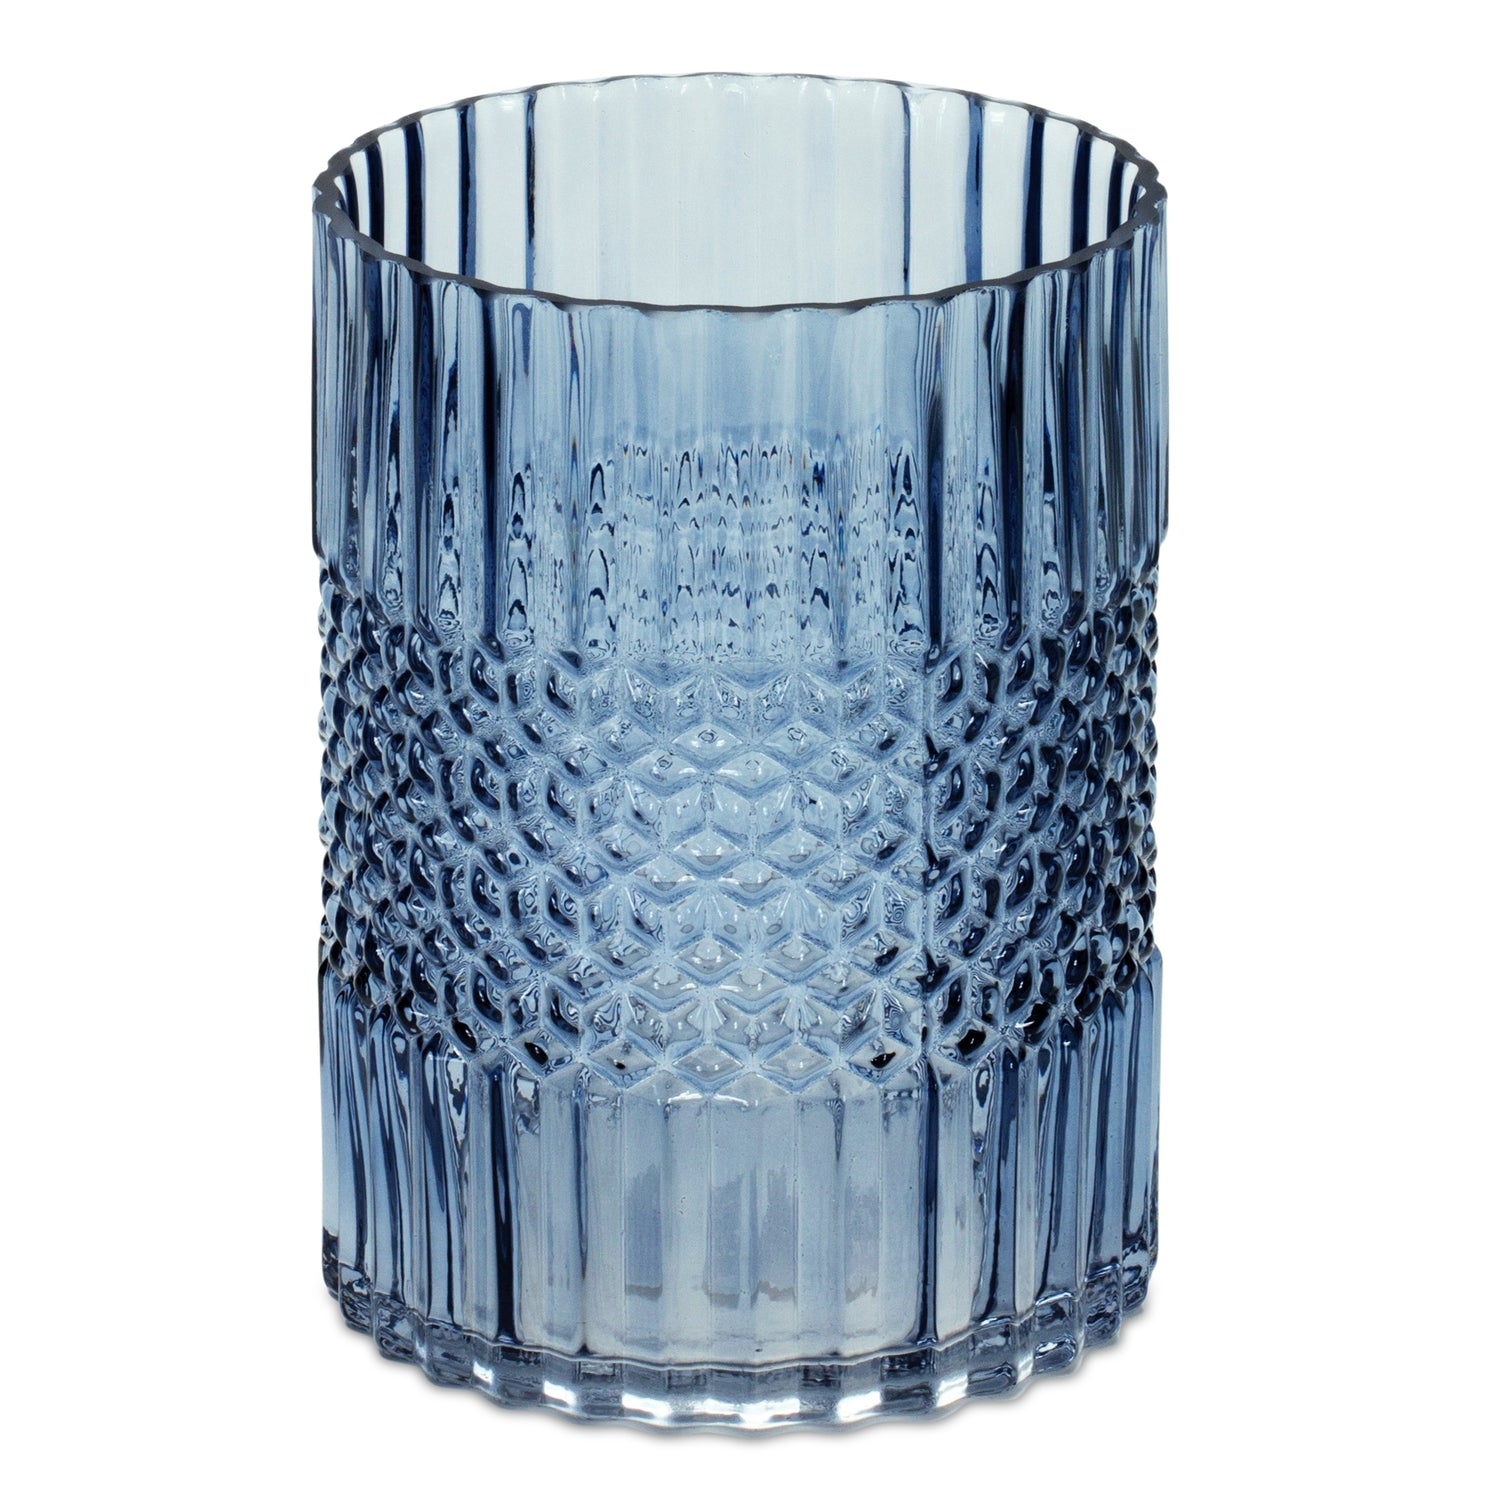 Vase 5"D x 6.5"H Glass